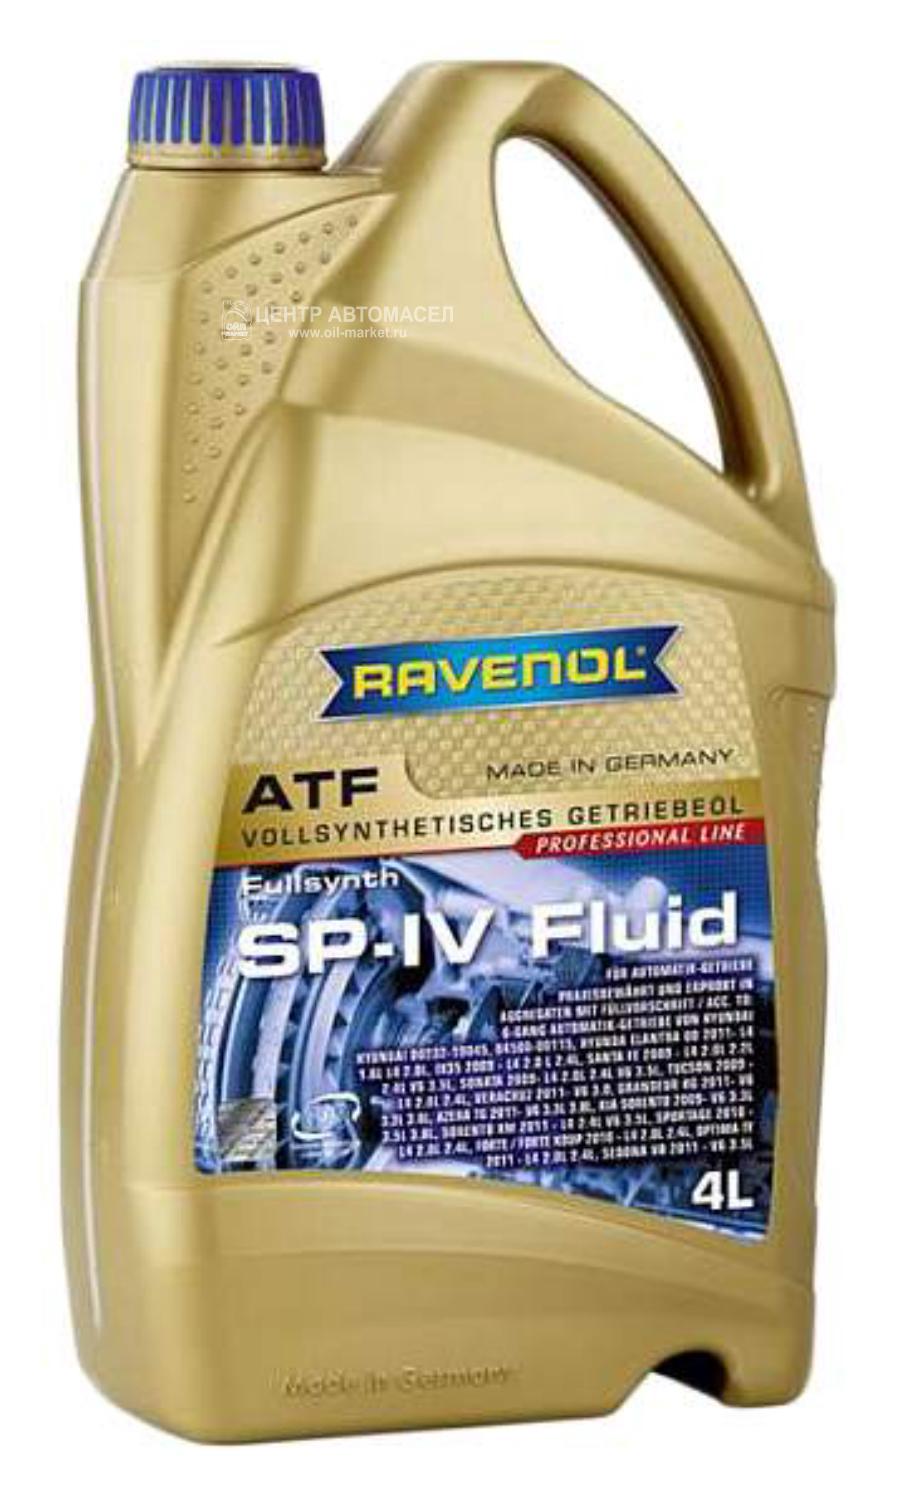 121210300401999 RAVENOL Трансмиссионное масло ravenol atf mm sp-iii fluid ( 4л) new